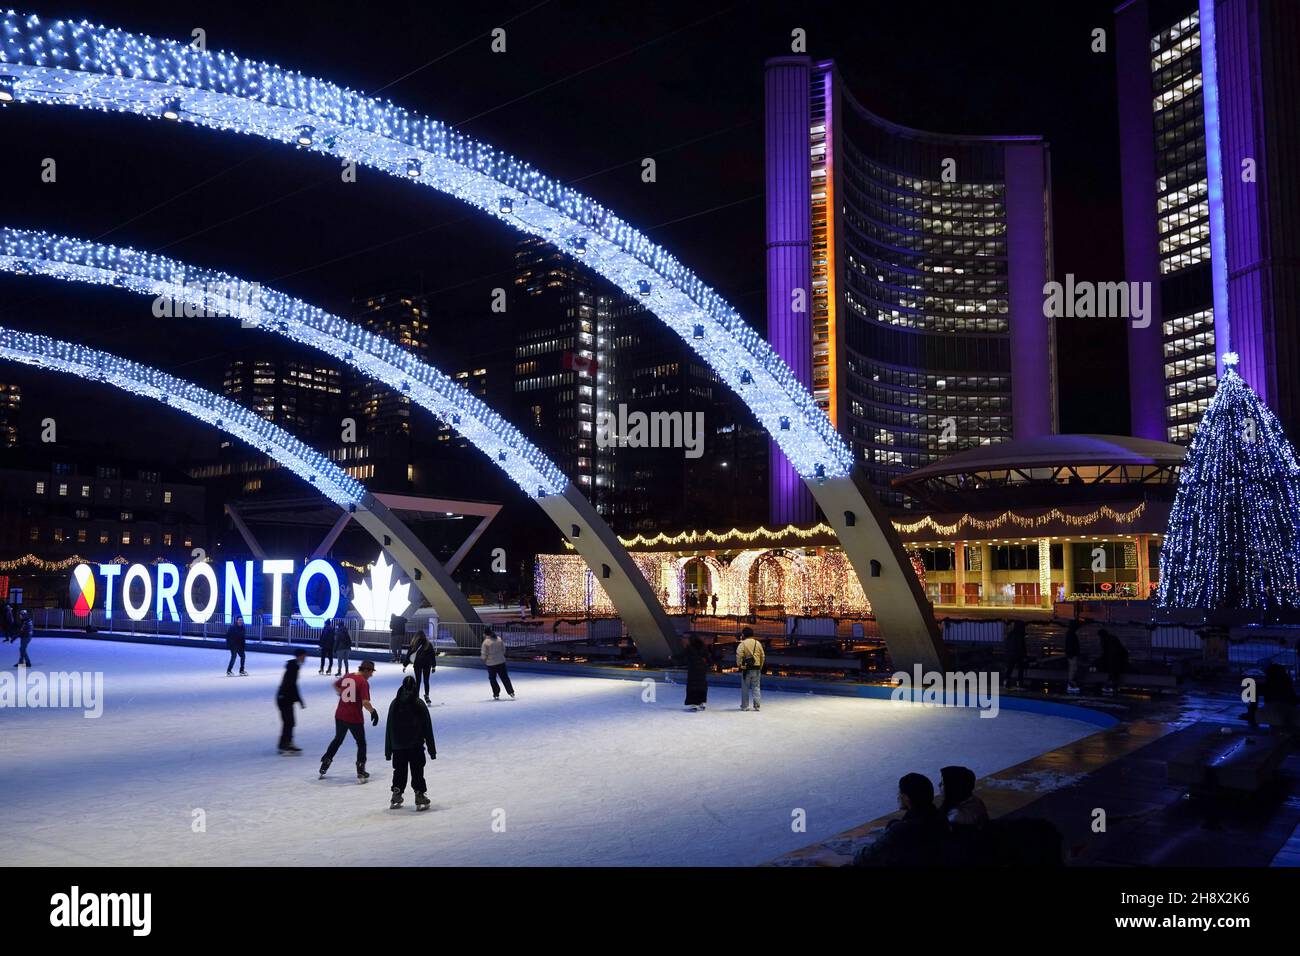 Toronto, Canada - le 30 novembre 2021 : la place de l'hôtel de ville de Toronto est illuminée de lumières vives en couleurs alternées pour la saison de Noël. Banque D'Images